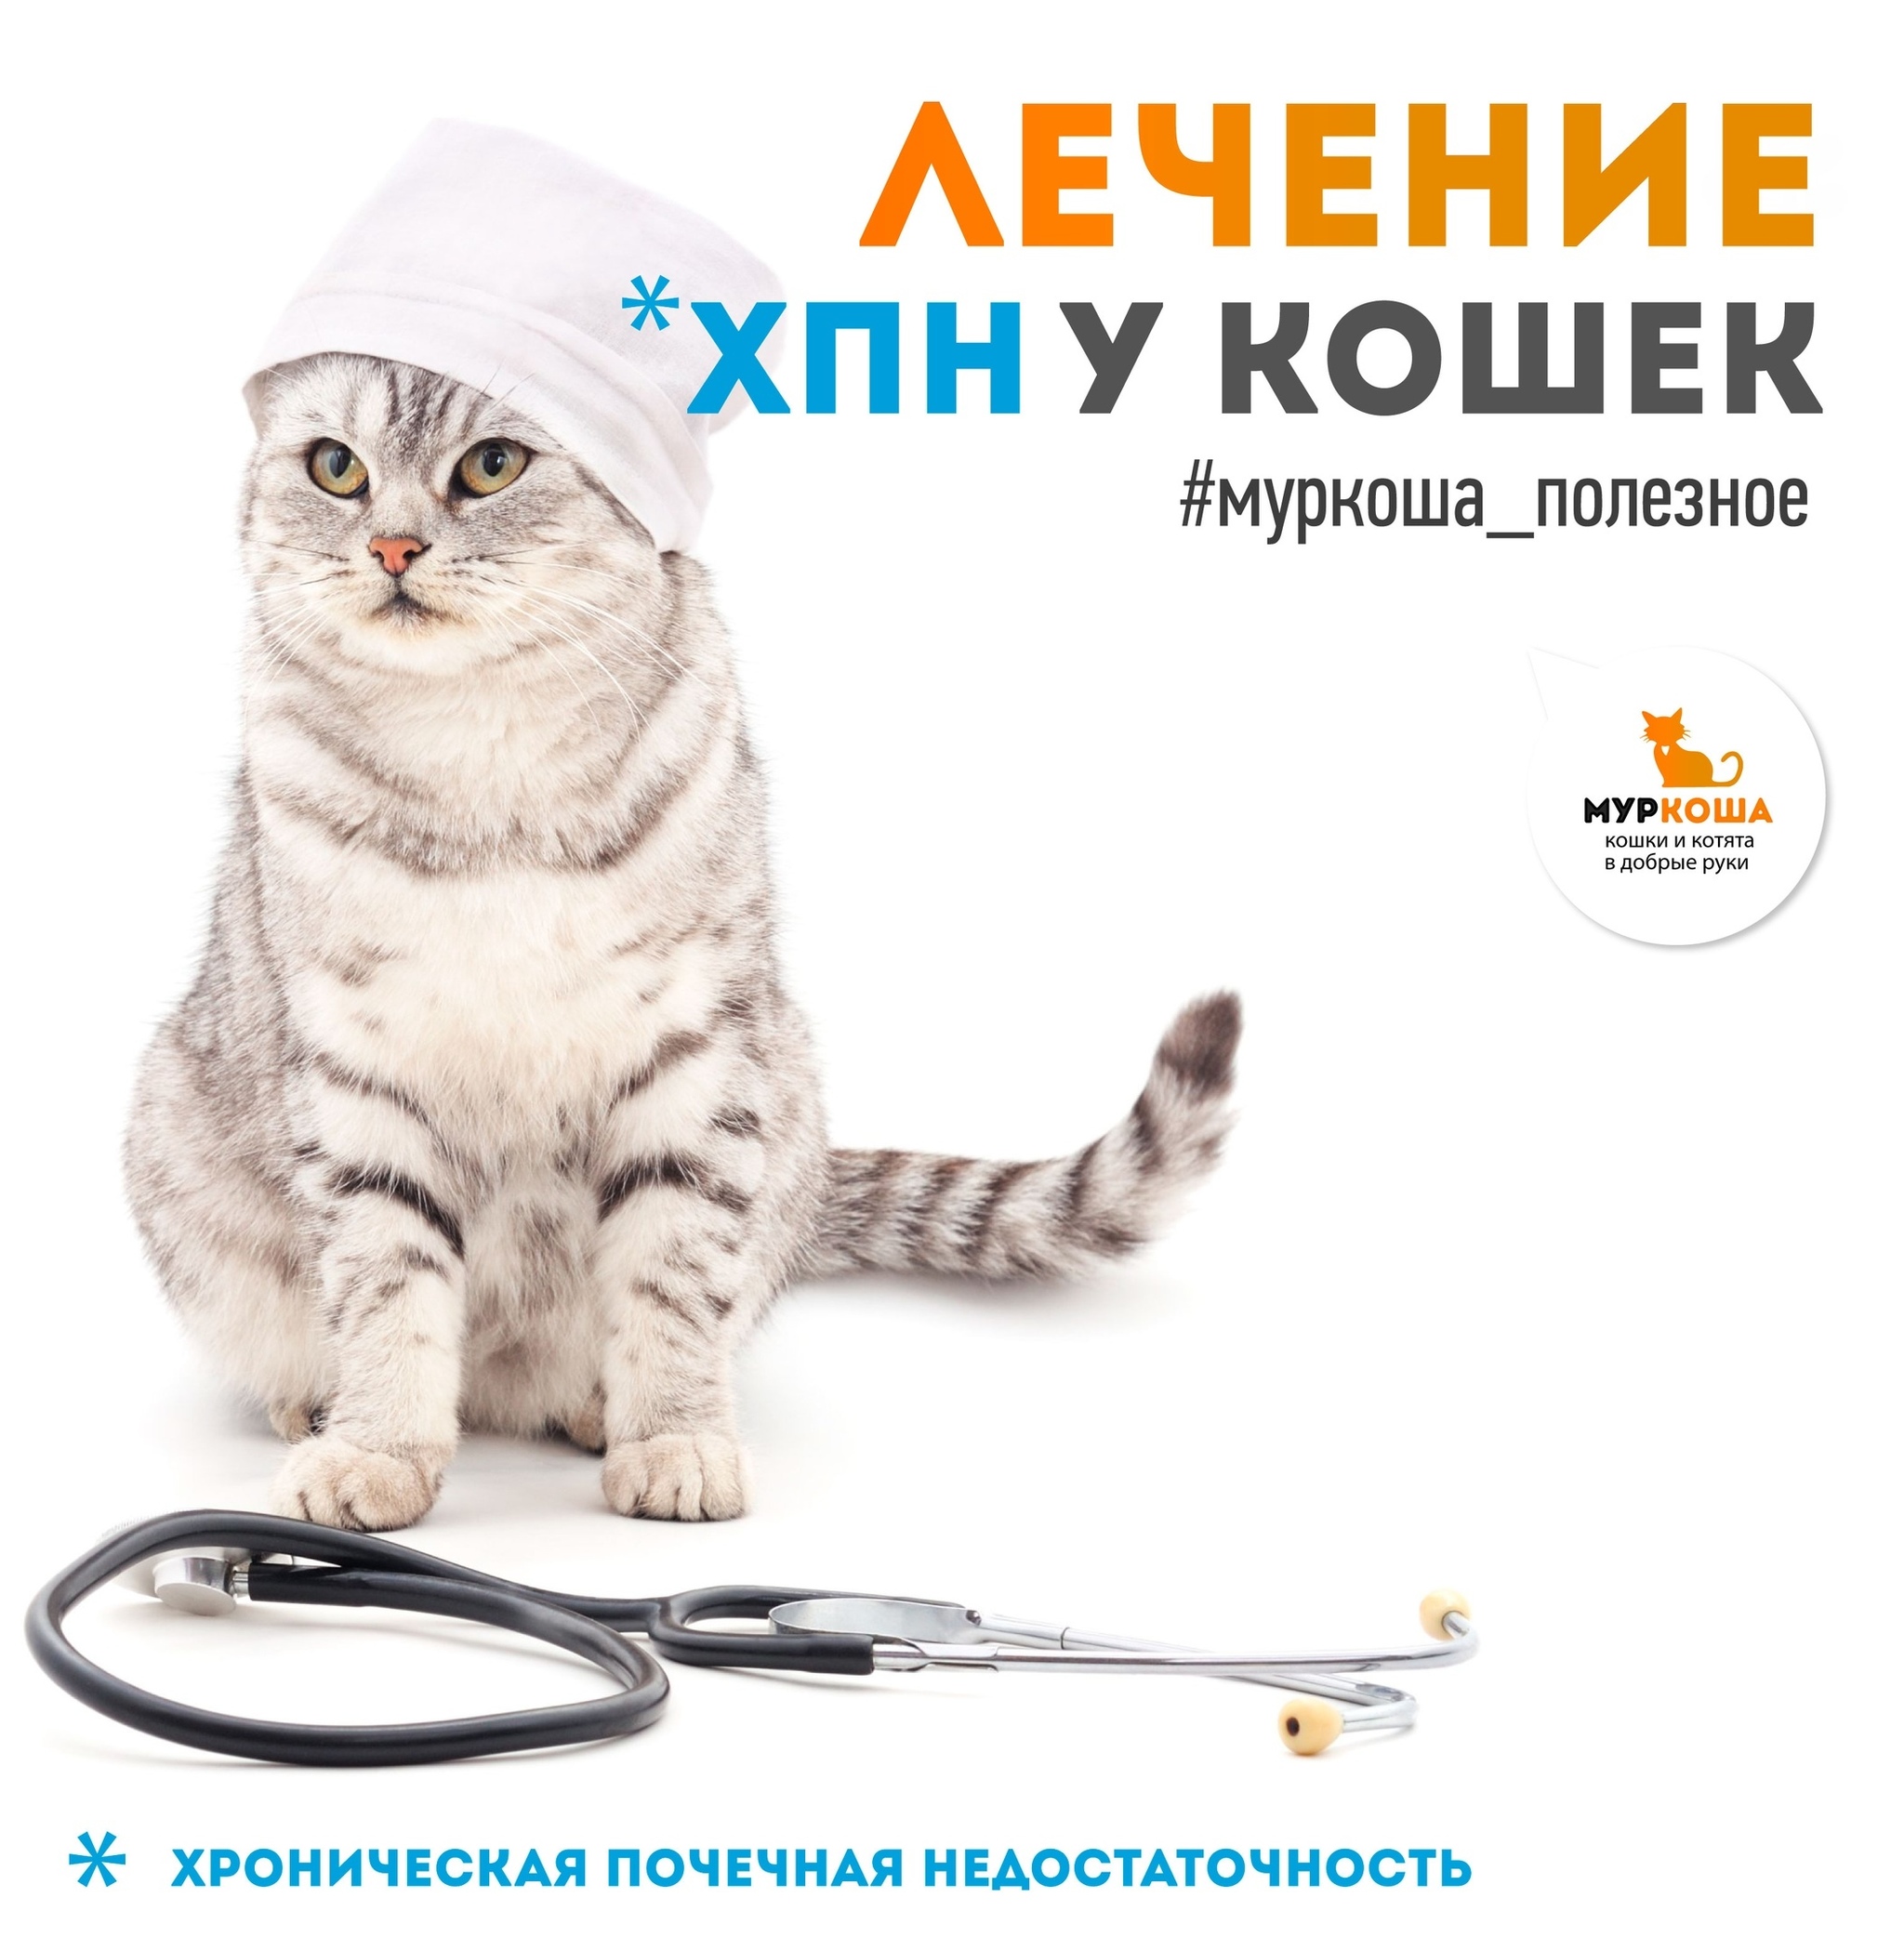 Делимся полезной информацией: лечение ХПН у кошек | Пикабу